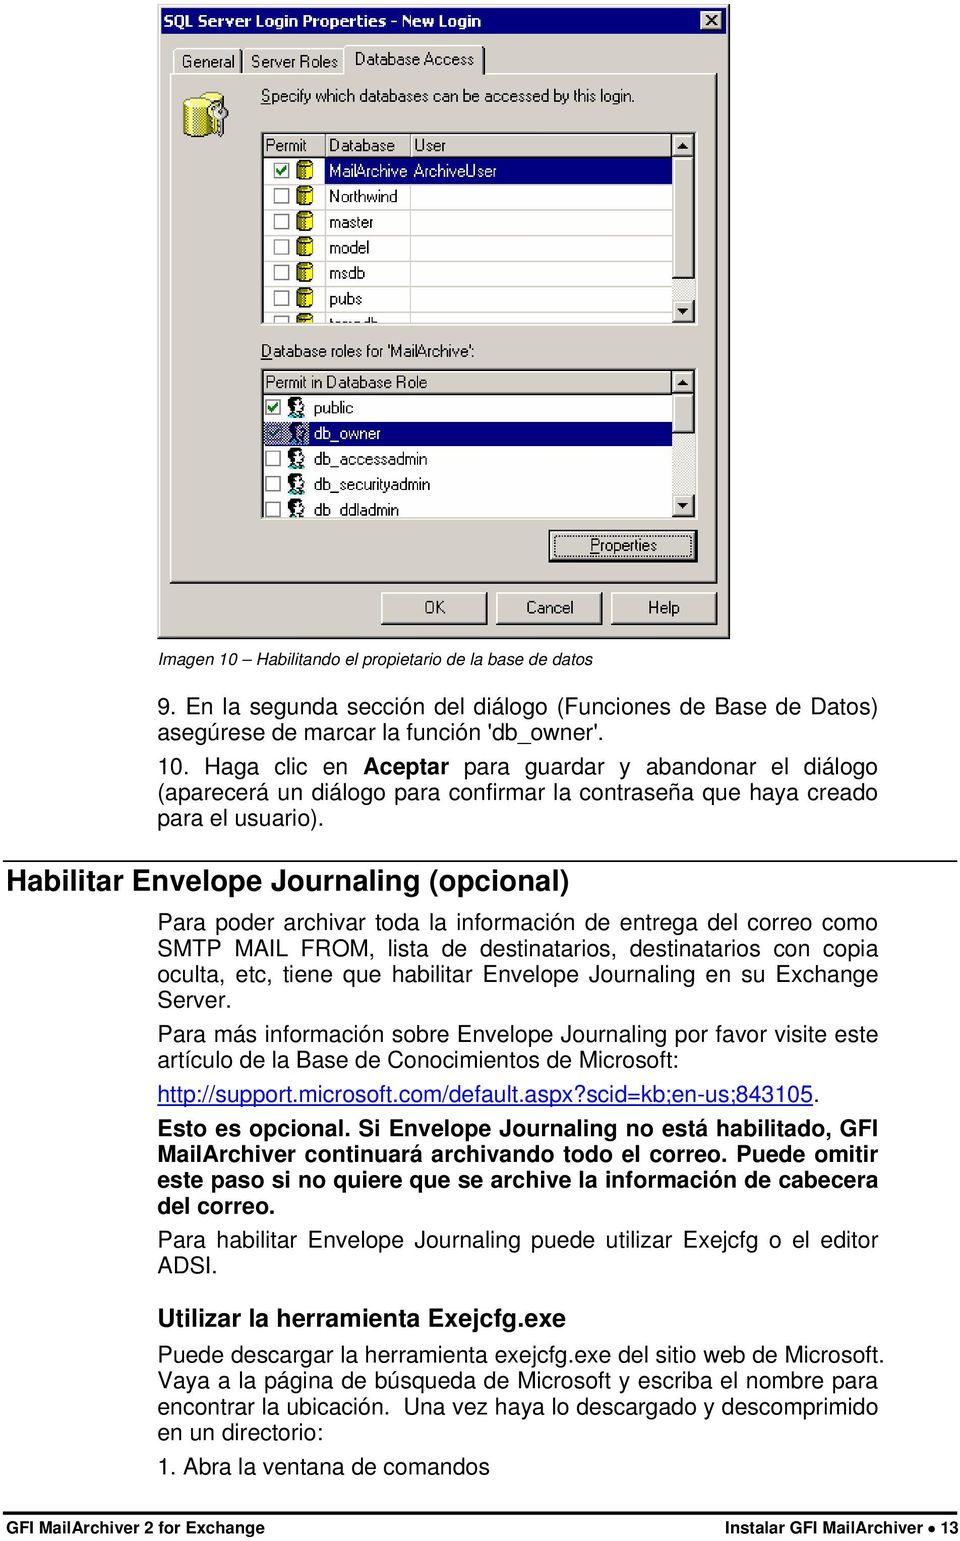 habilitar Envelope Journaling en su Exchange Server. Para más información sobre Envelope Journaling por favor visite este artículo de la Base de Conocimientos de Microsoft: http://support.microsoft.